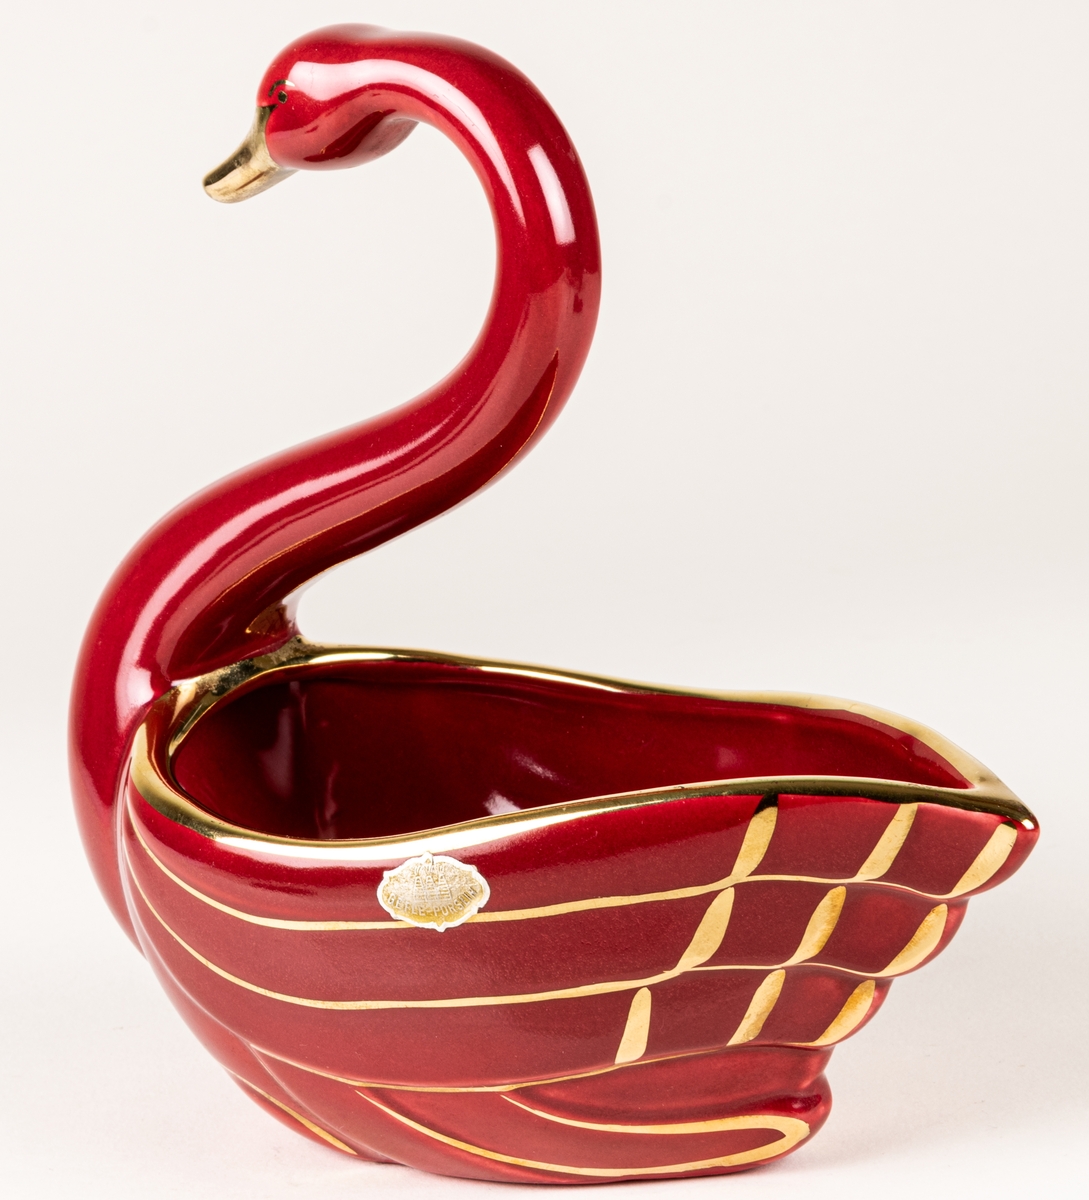 Prydnadsfigur eller skål i form av en svan, flintgods, modell A, dekorserie Rubin; röd glasyr med handmålat guld. Rubin producerades under åren 1940-1958. Oklart vem formgivaren är.